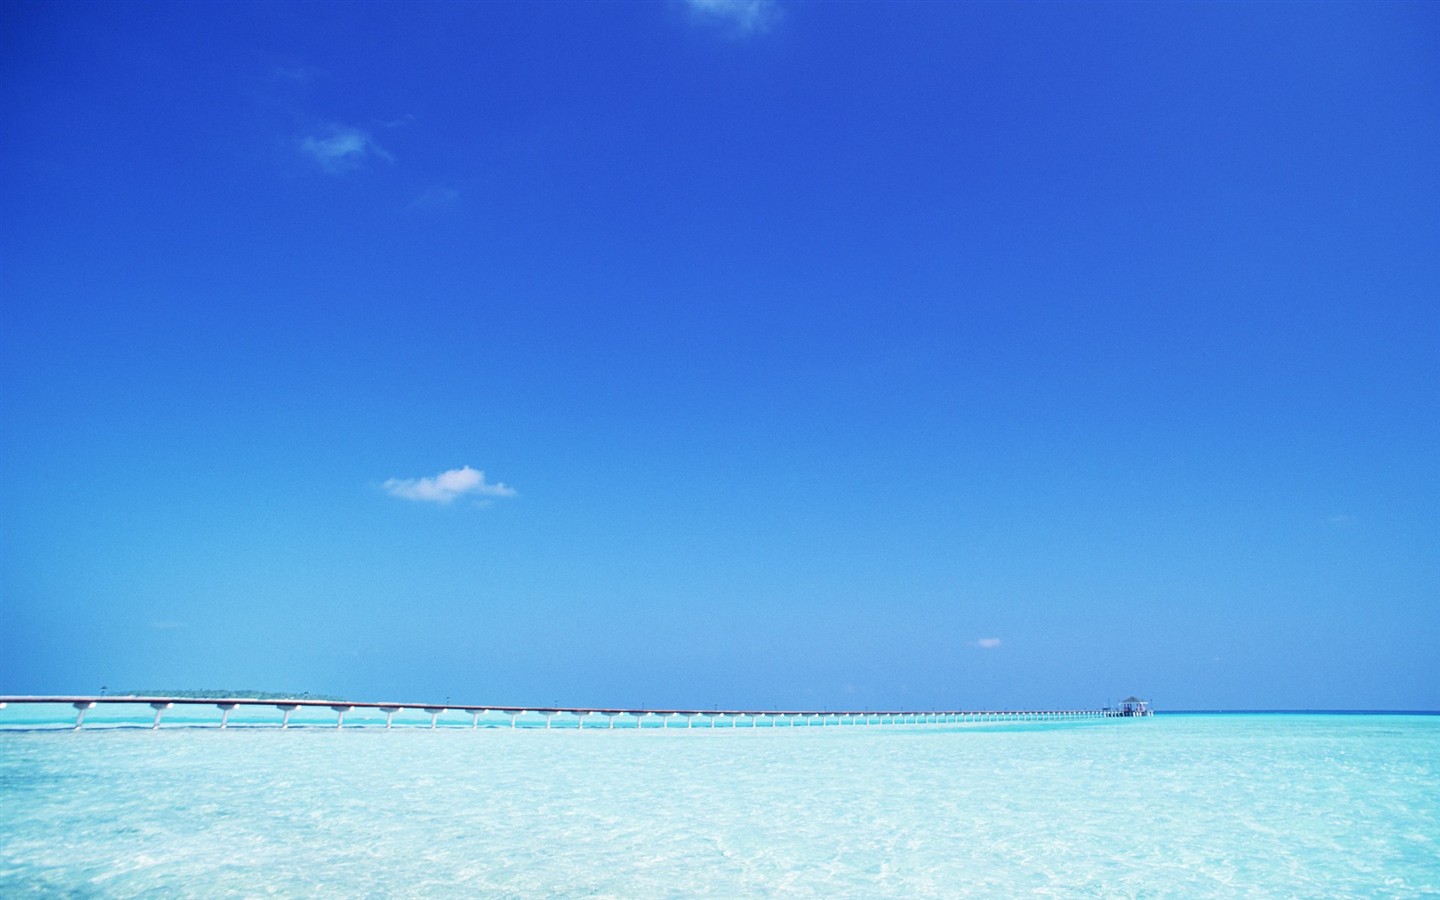 Maledivy vody a modrou oblohu #22 - 1440x900